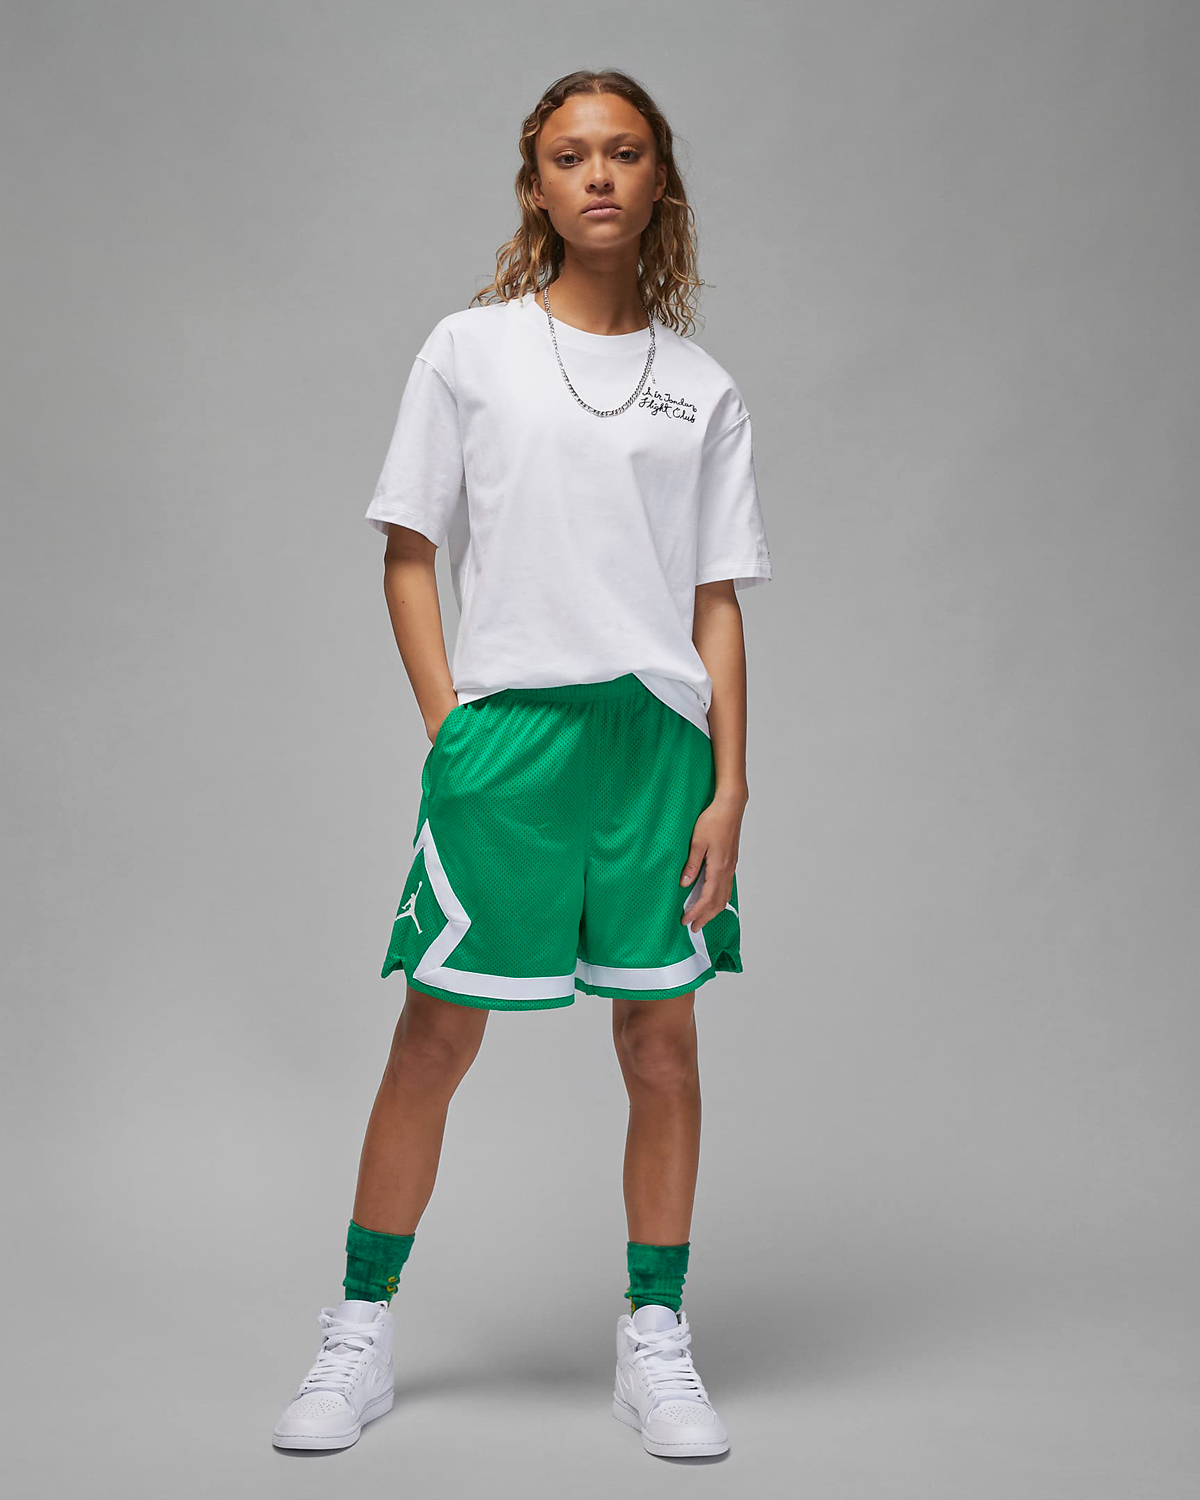 Jordan-Womens-Lucky-Green-Outfit